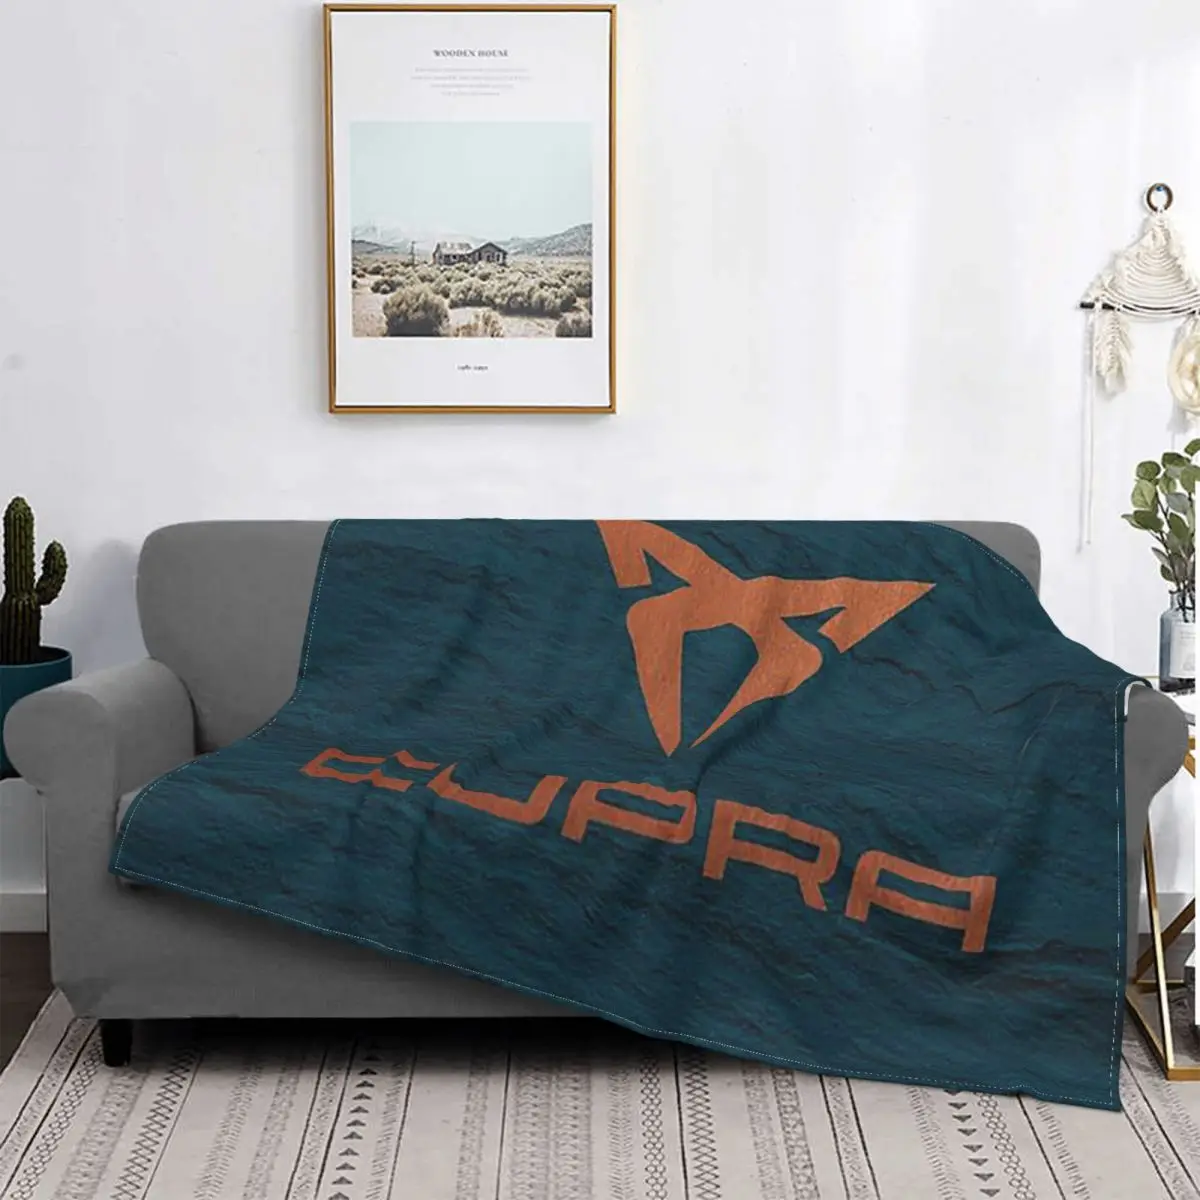 

Одеяло Cupra из кораллового флиса, плюшевое, осенне-зимнее, популярное искусство, многофункциональное, очень теплое, покрывало для дивана, иск...